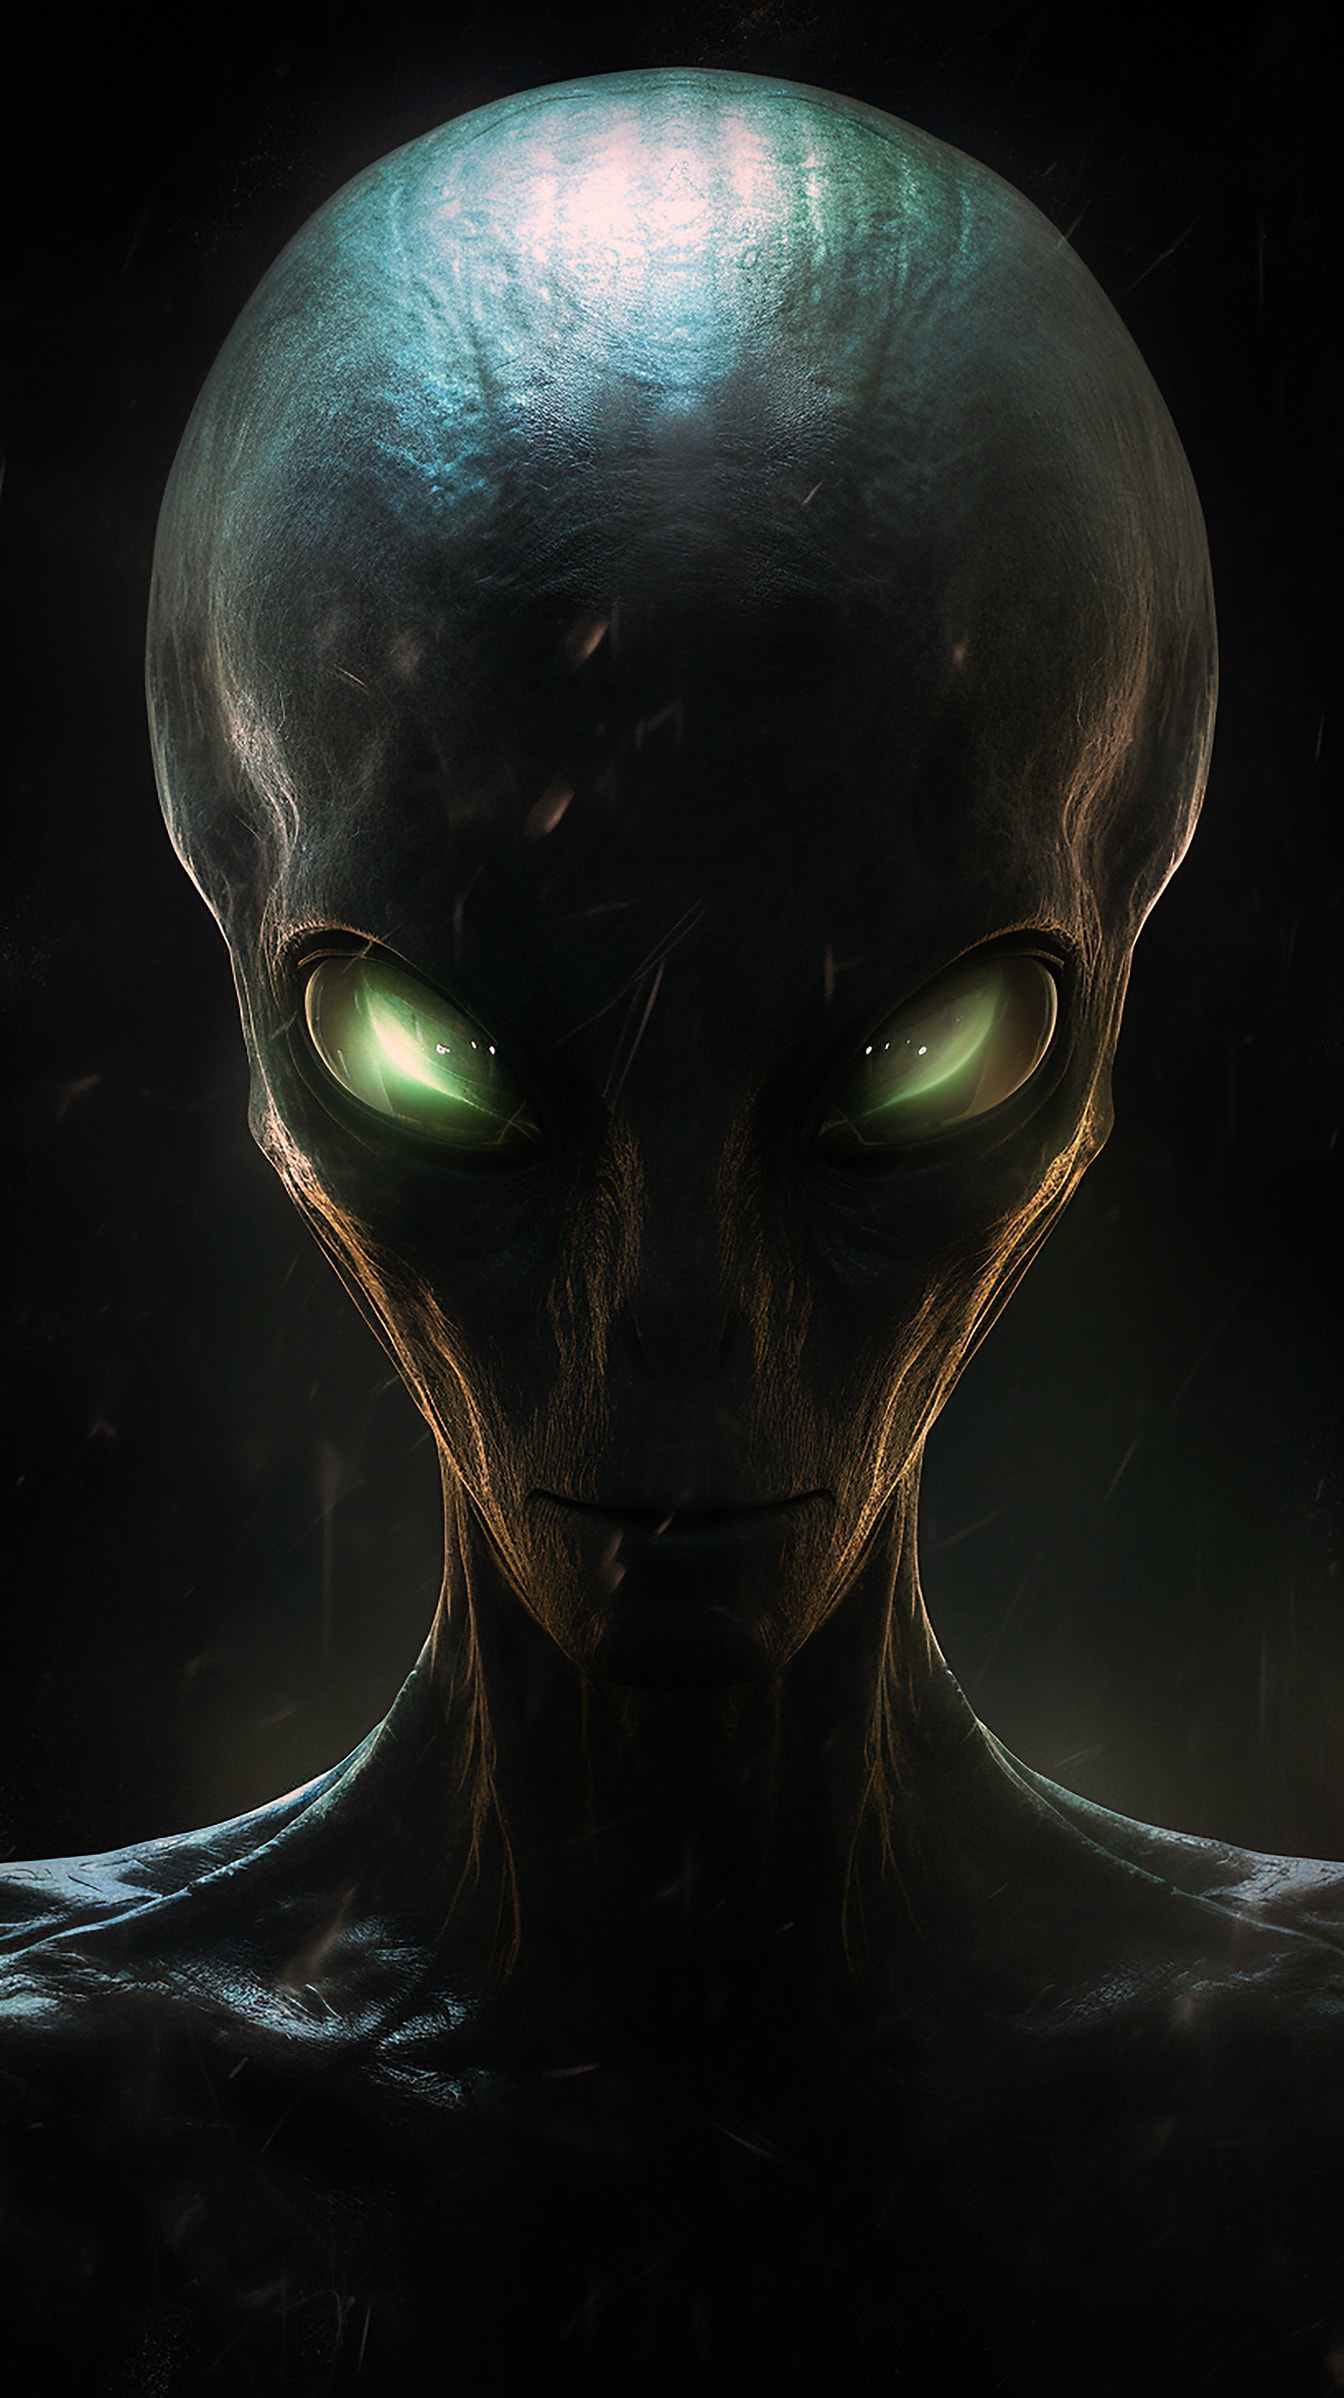 Retrato de primer plano de una criatura alienígena verde oscuro con ojos de luz verde